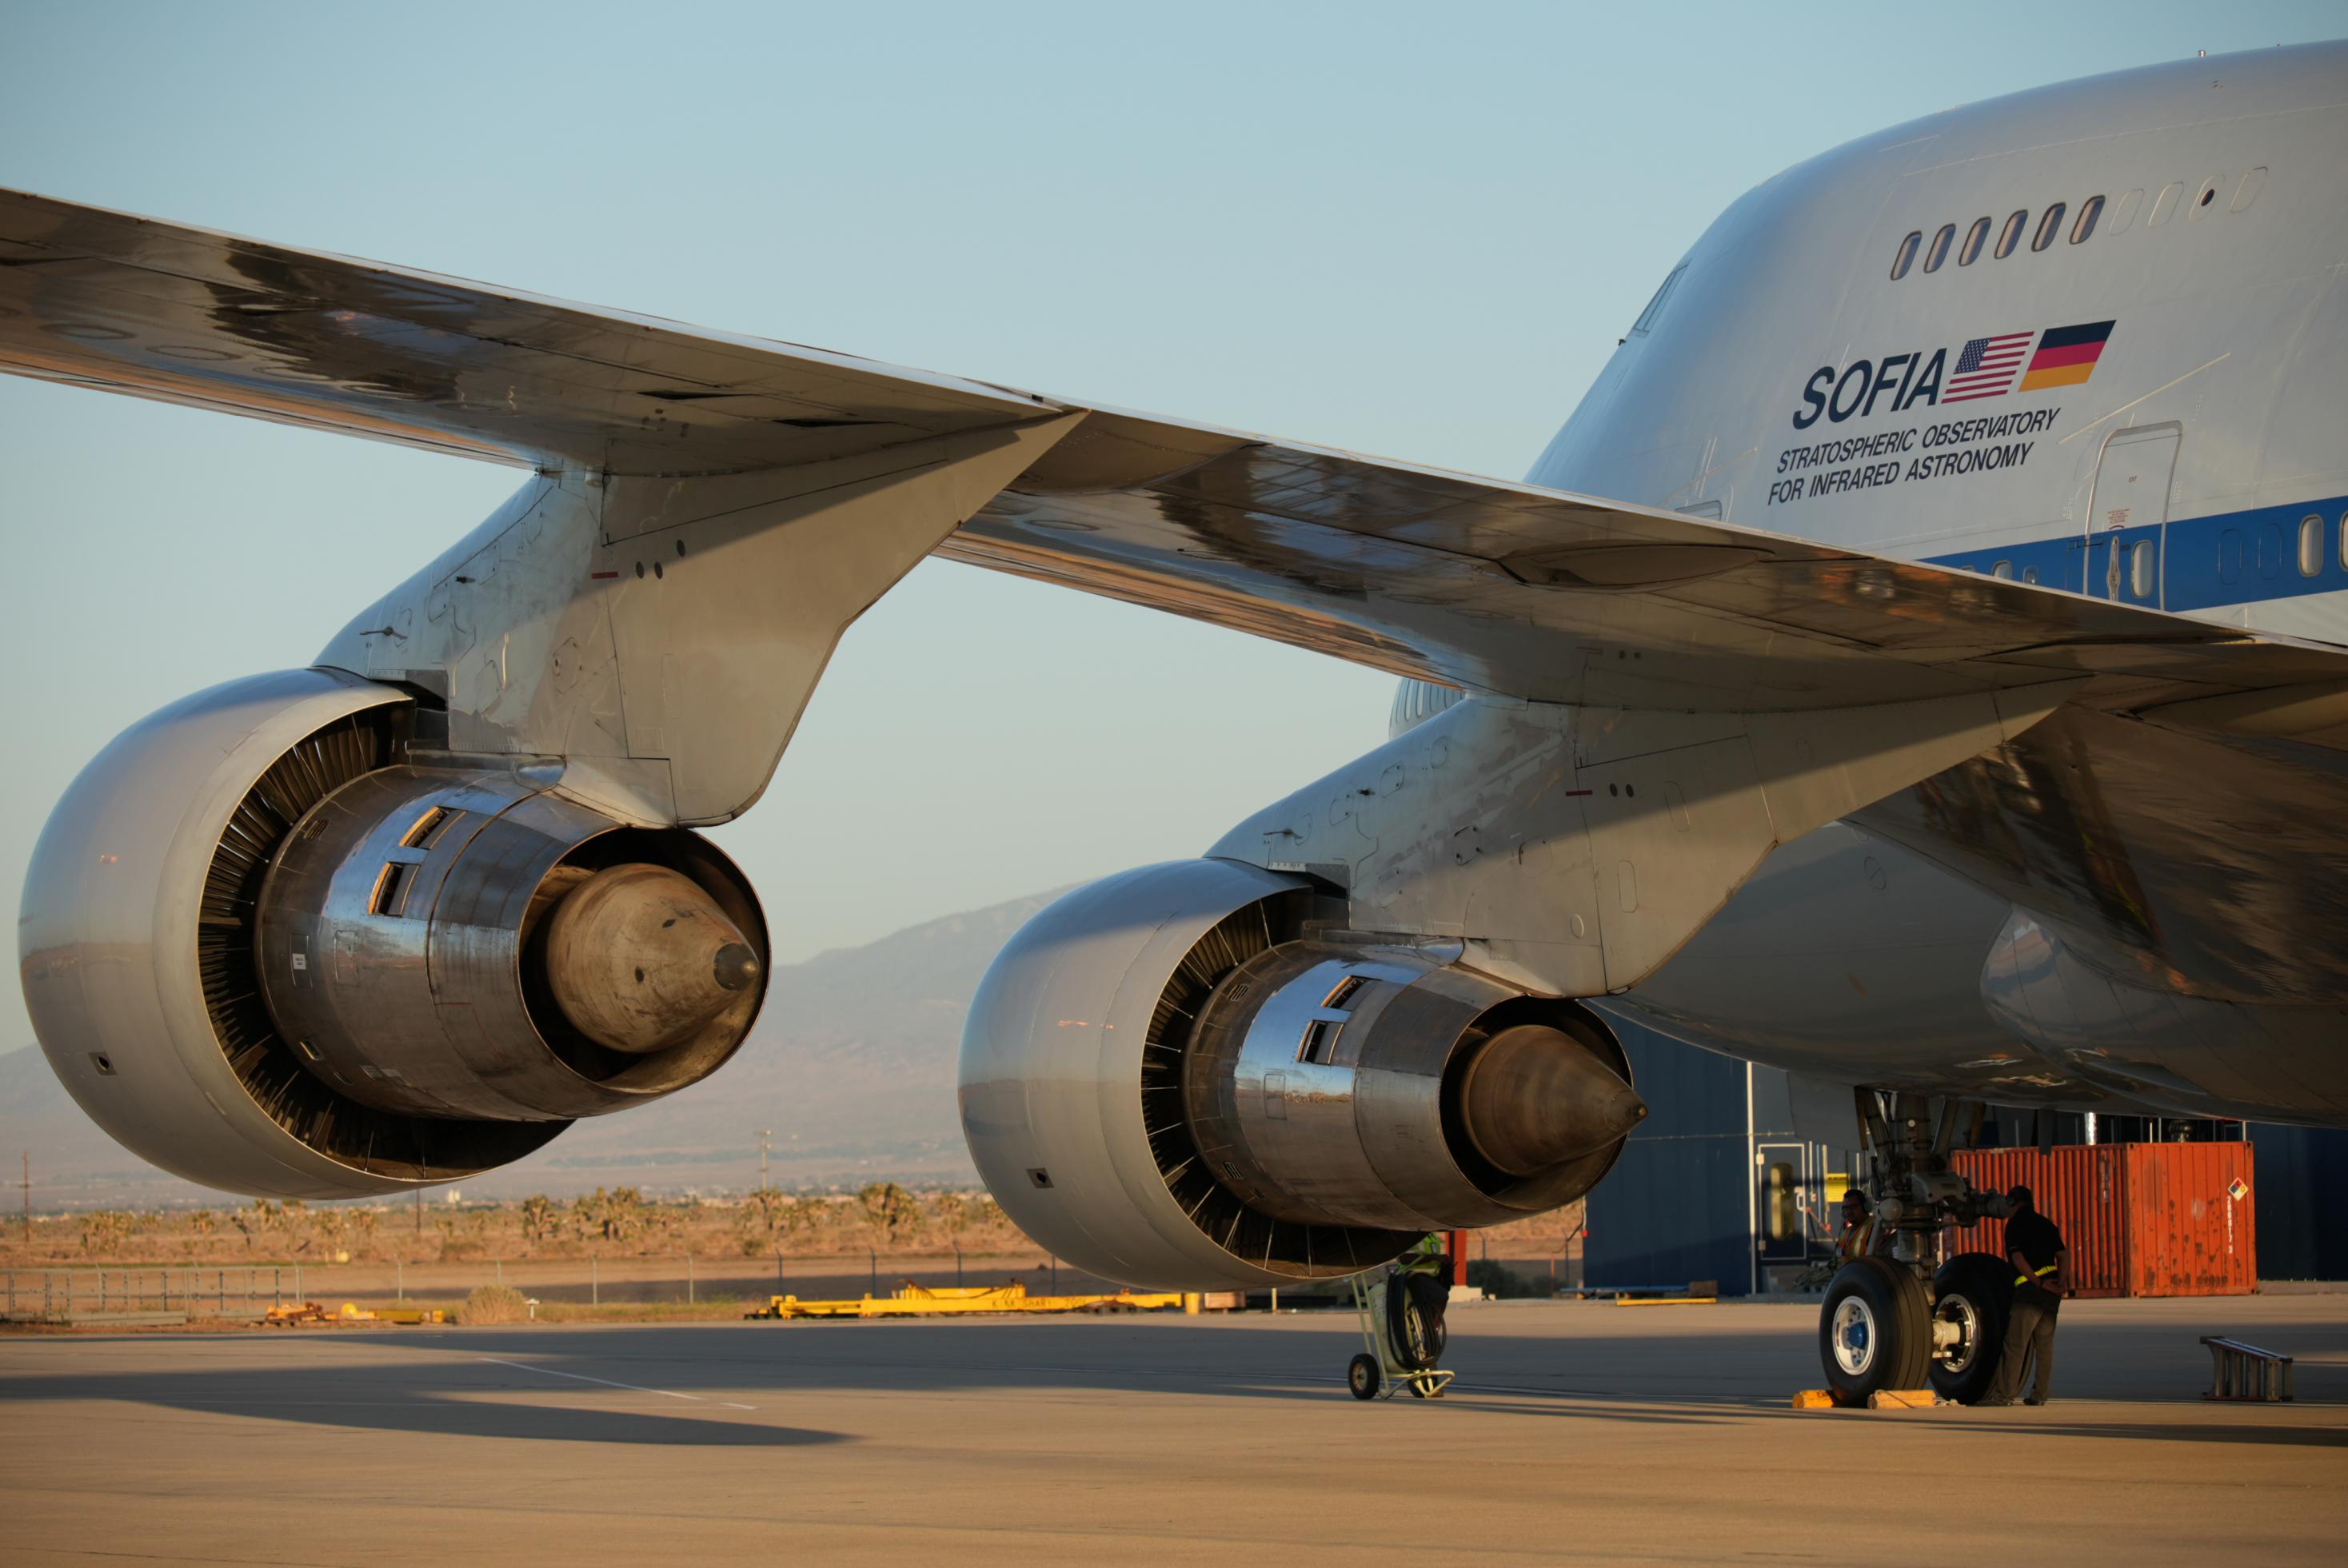 Nahaufnahme der zwei SOFIA-Motoren auf der linken Seite des umgebauten Jumbo-Jets im Abendlicht